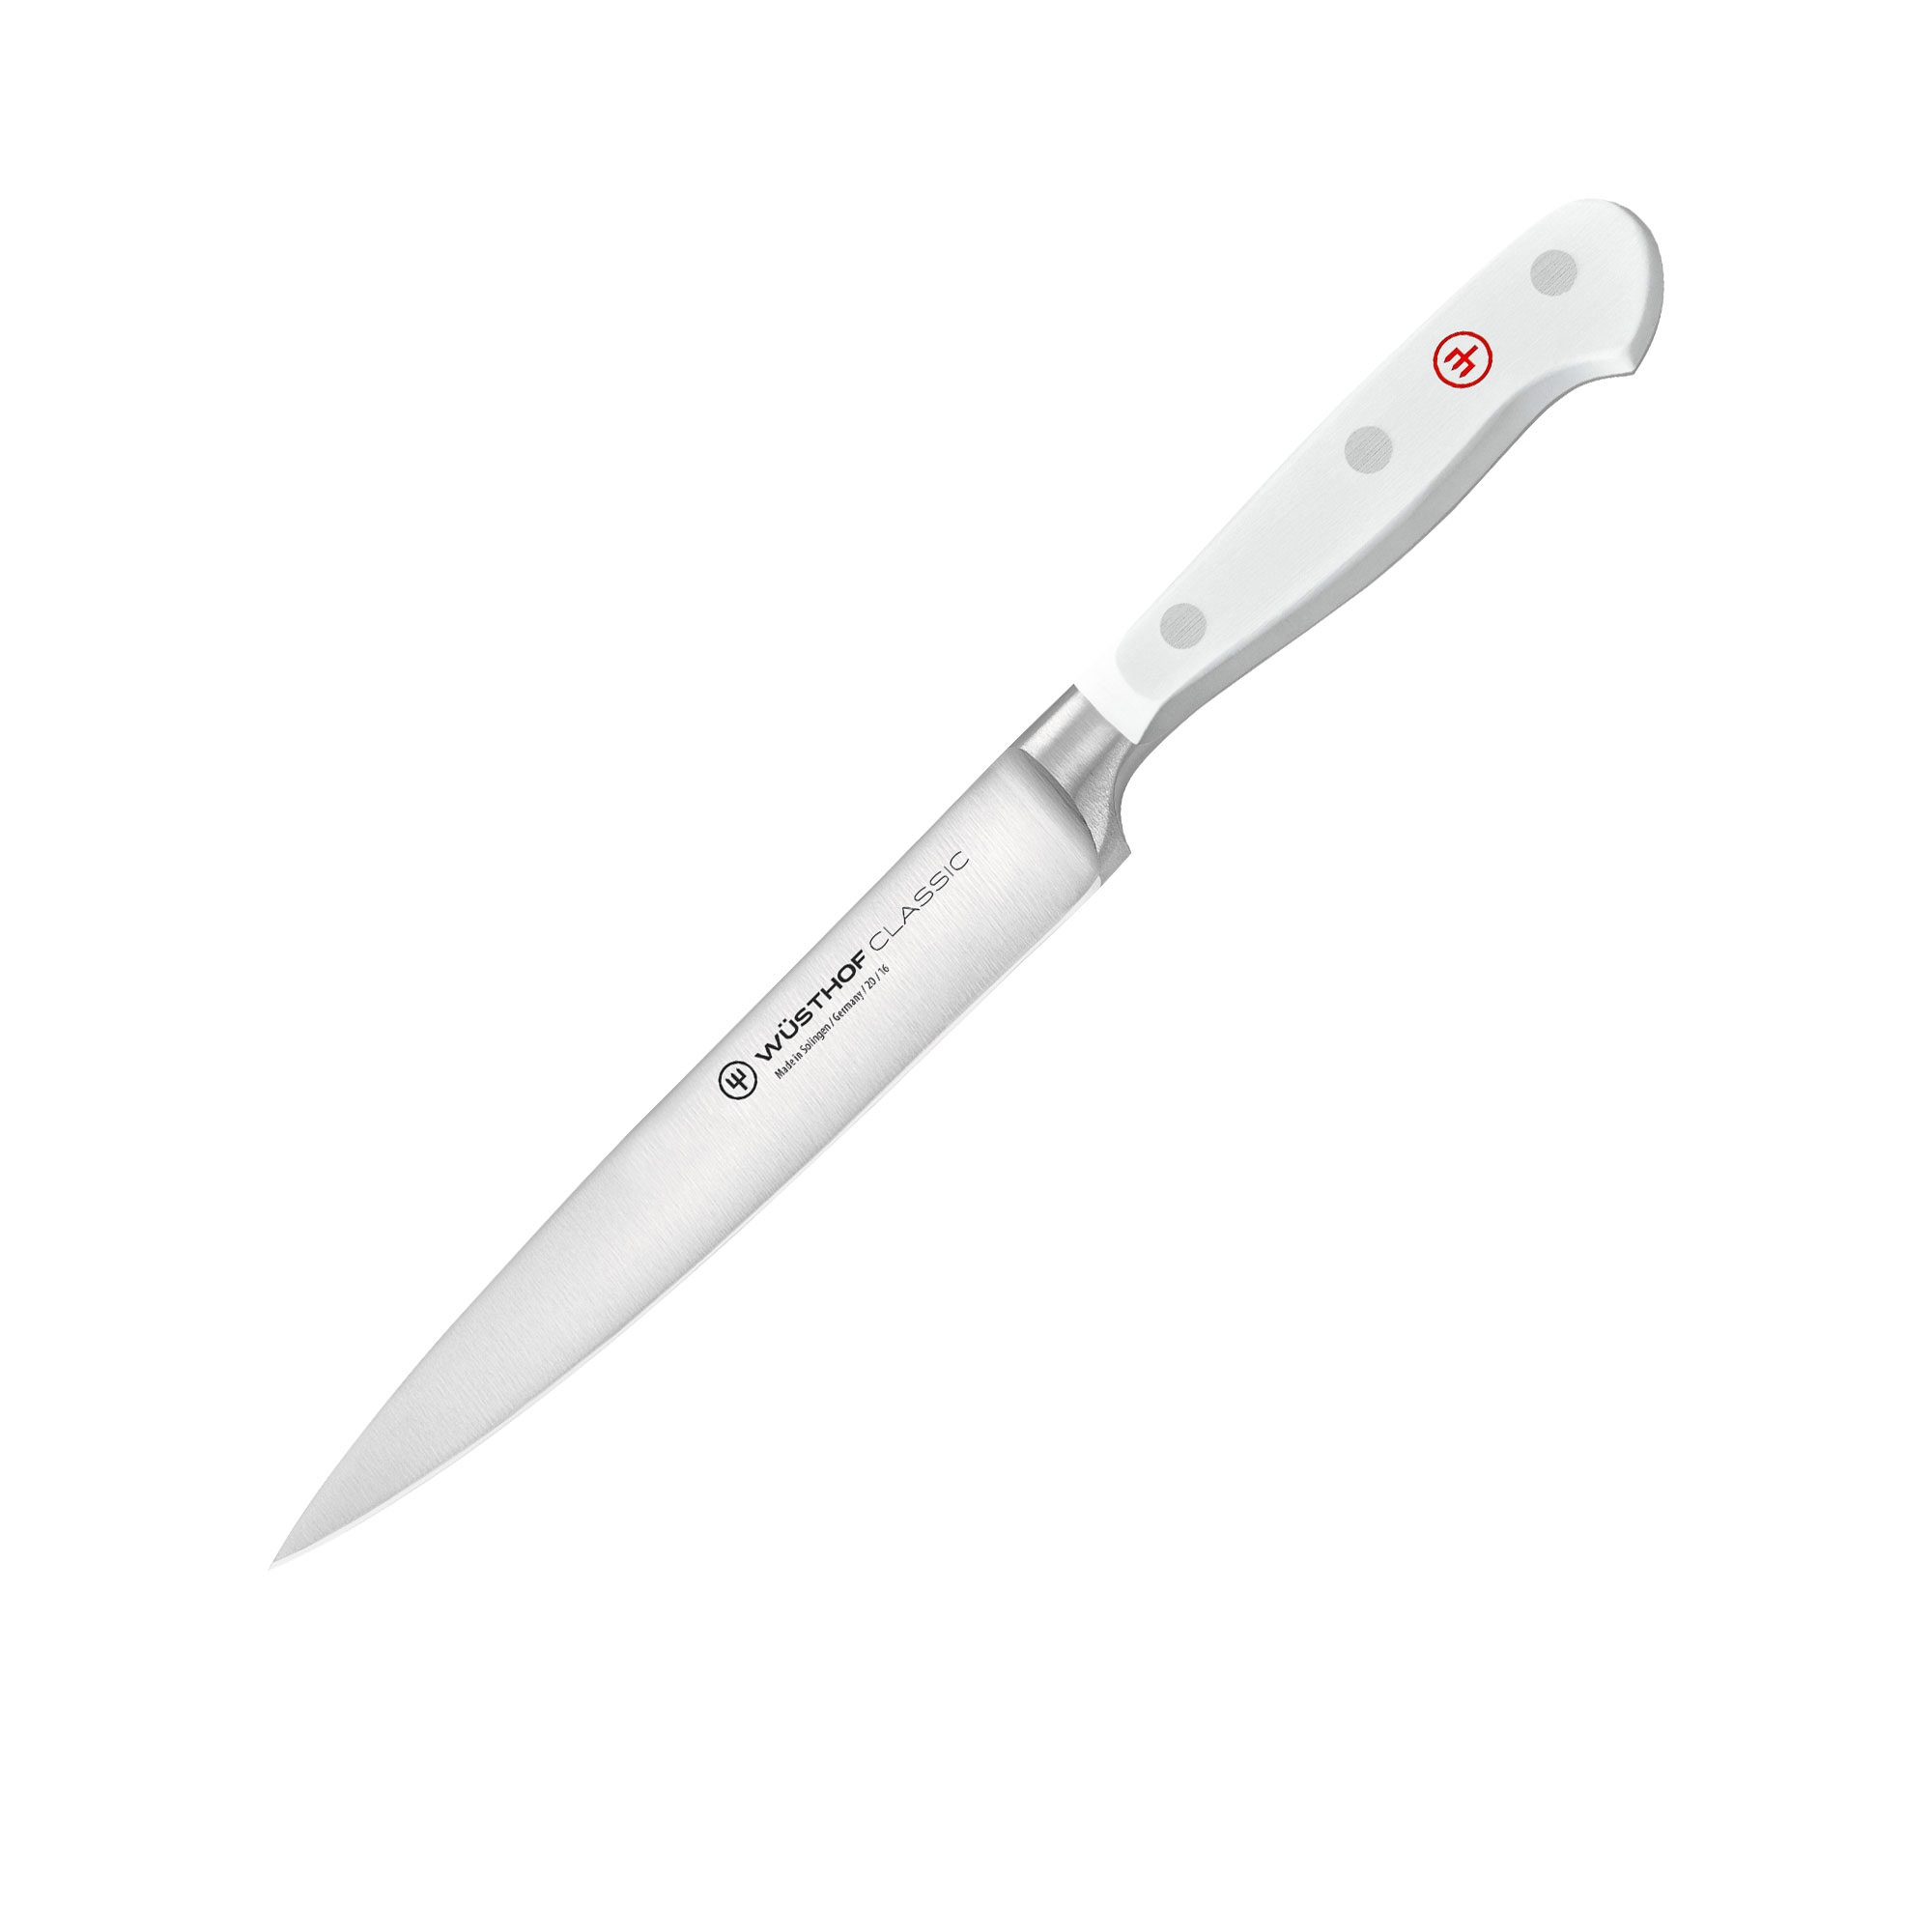 Wusthof Classic White Utility Knife 16cm Image 1